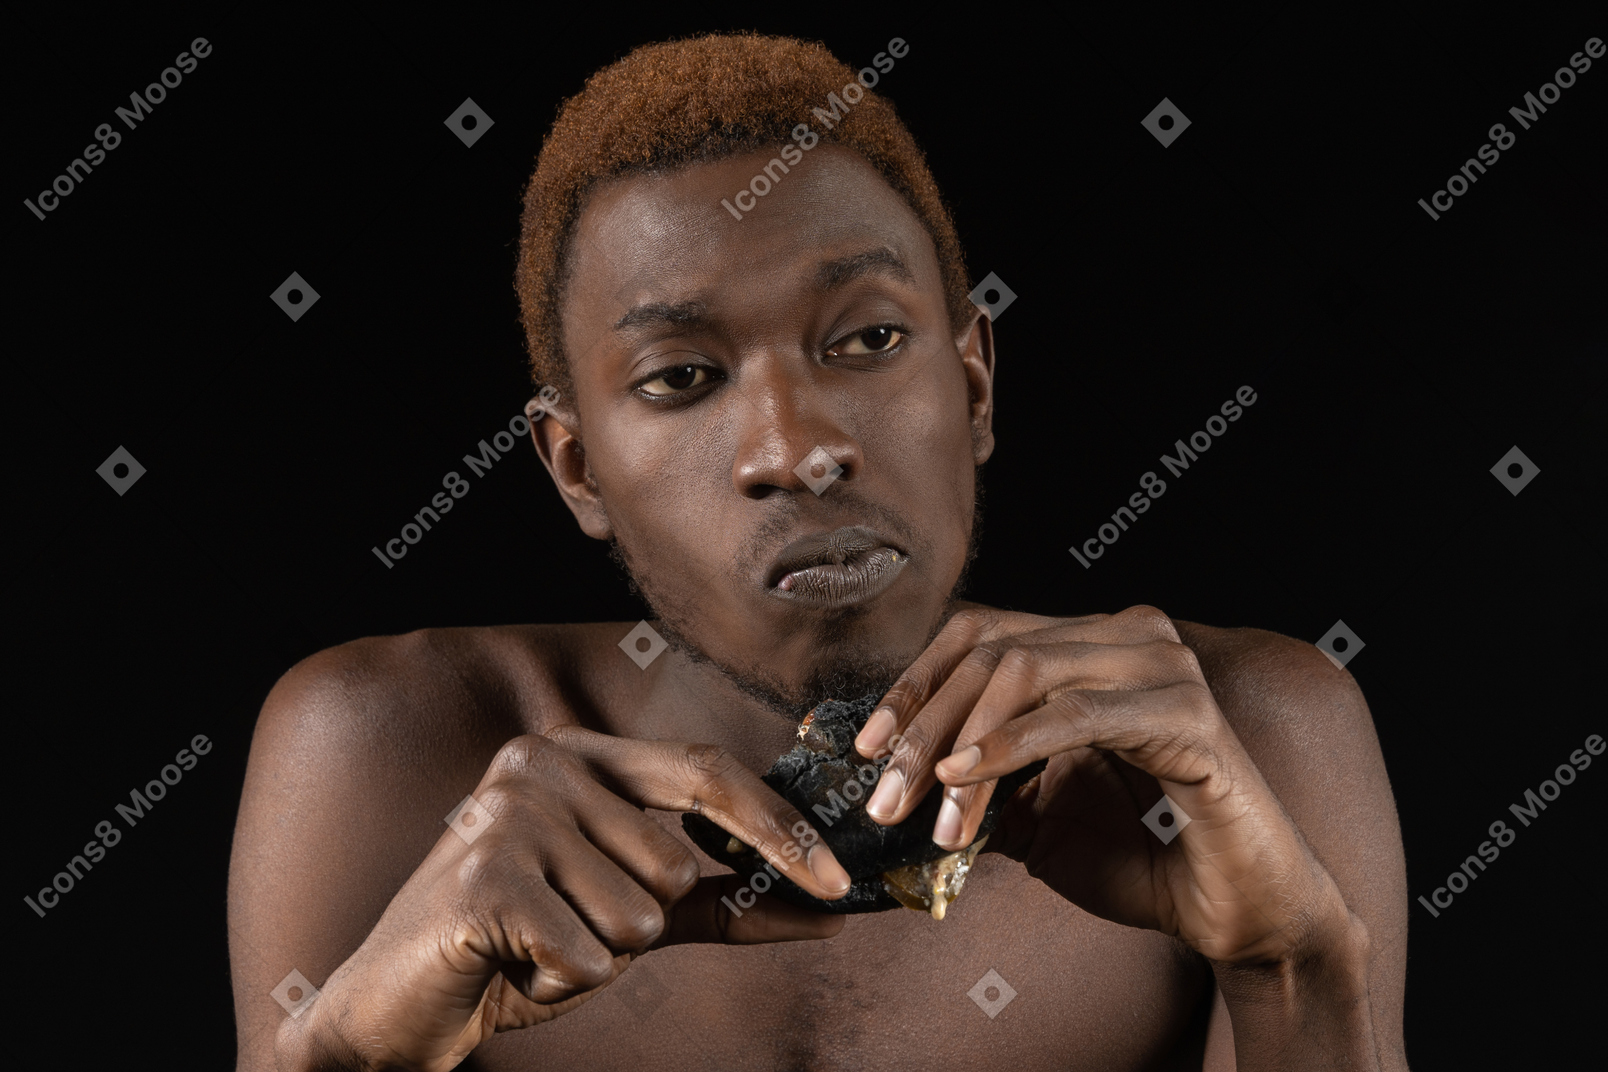 Vista frontal de um jovem afro pensativo comendo um hambúrguer